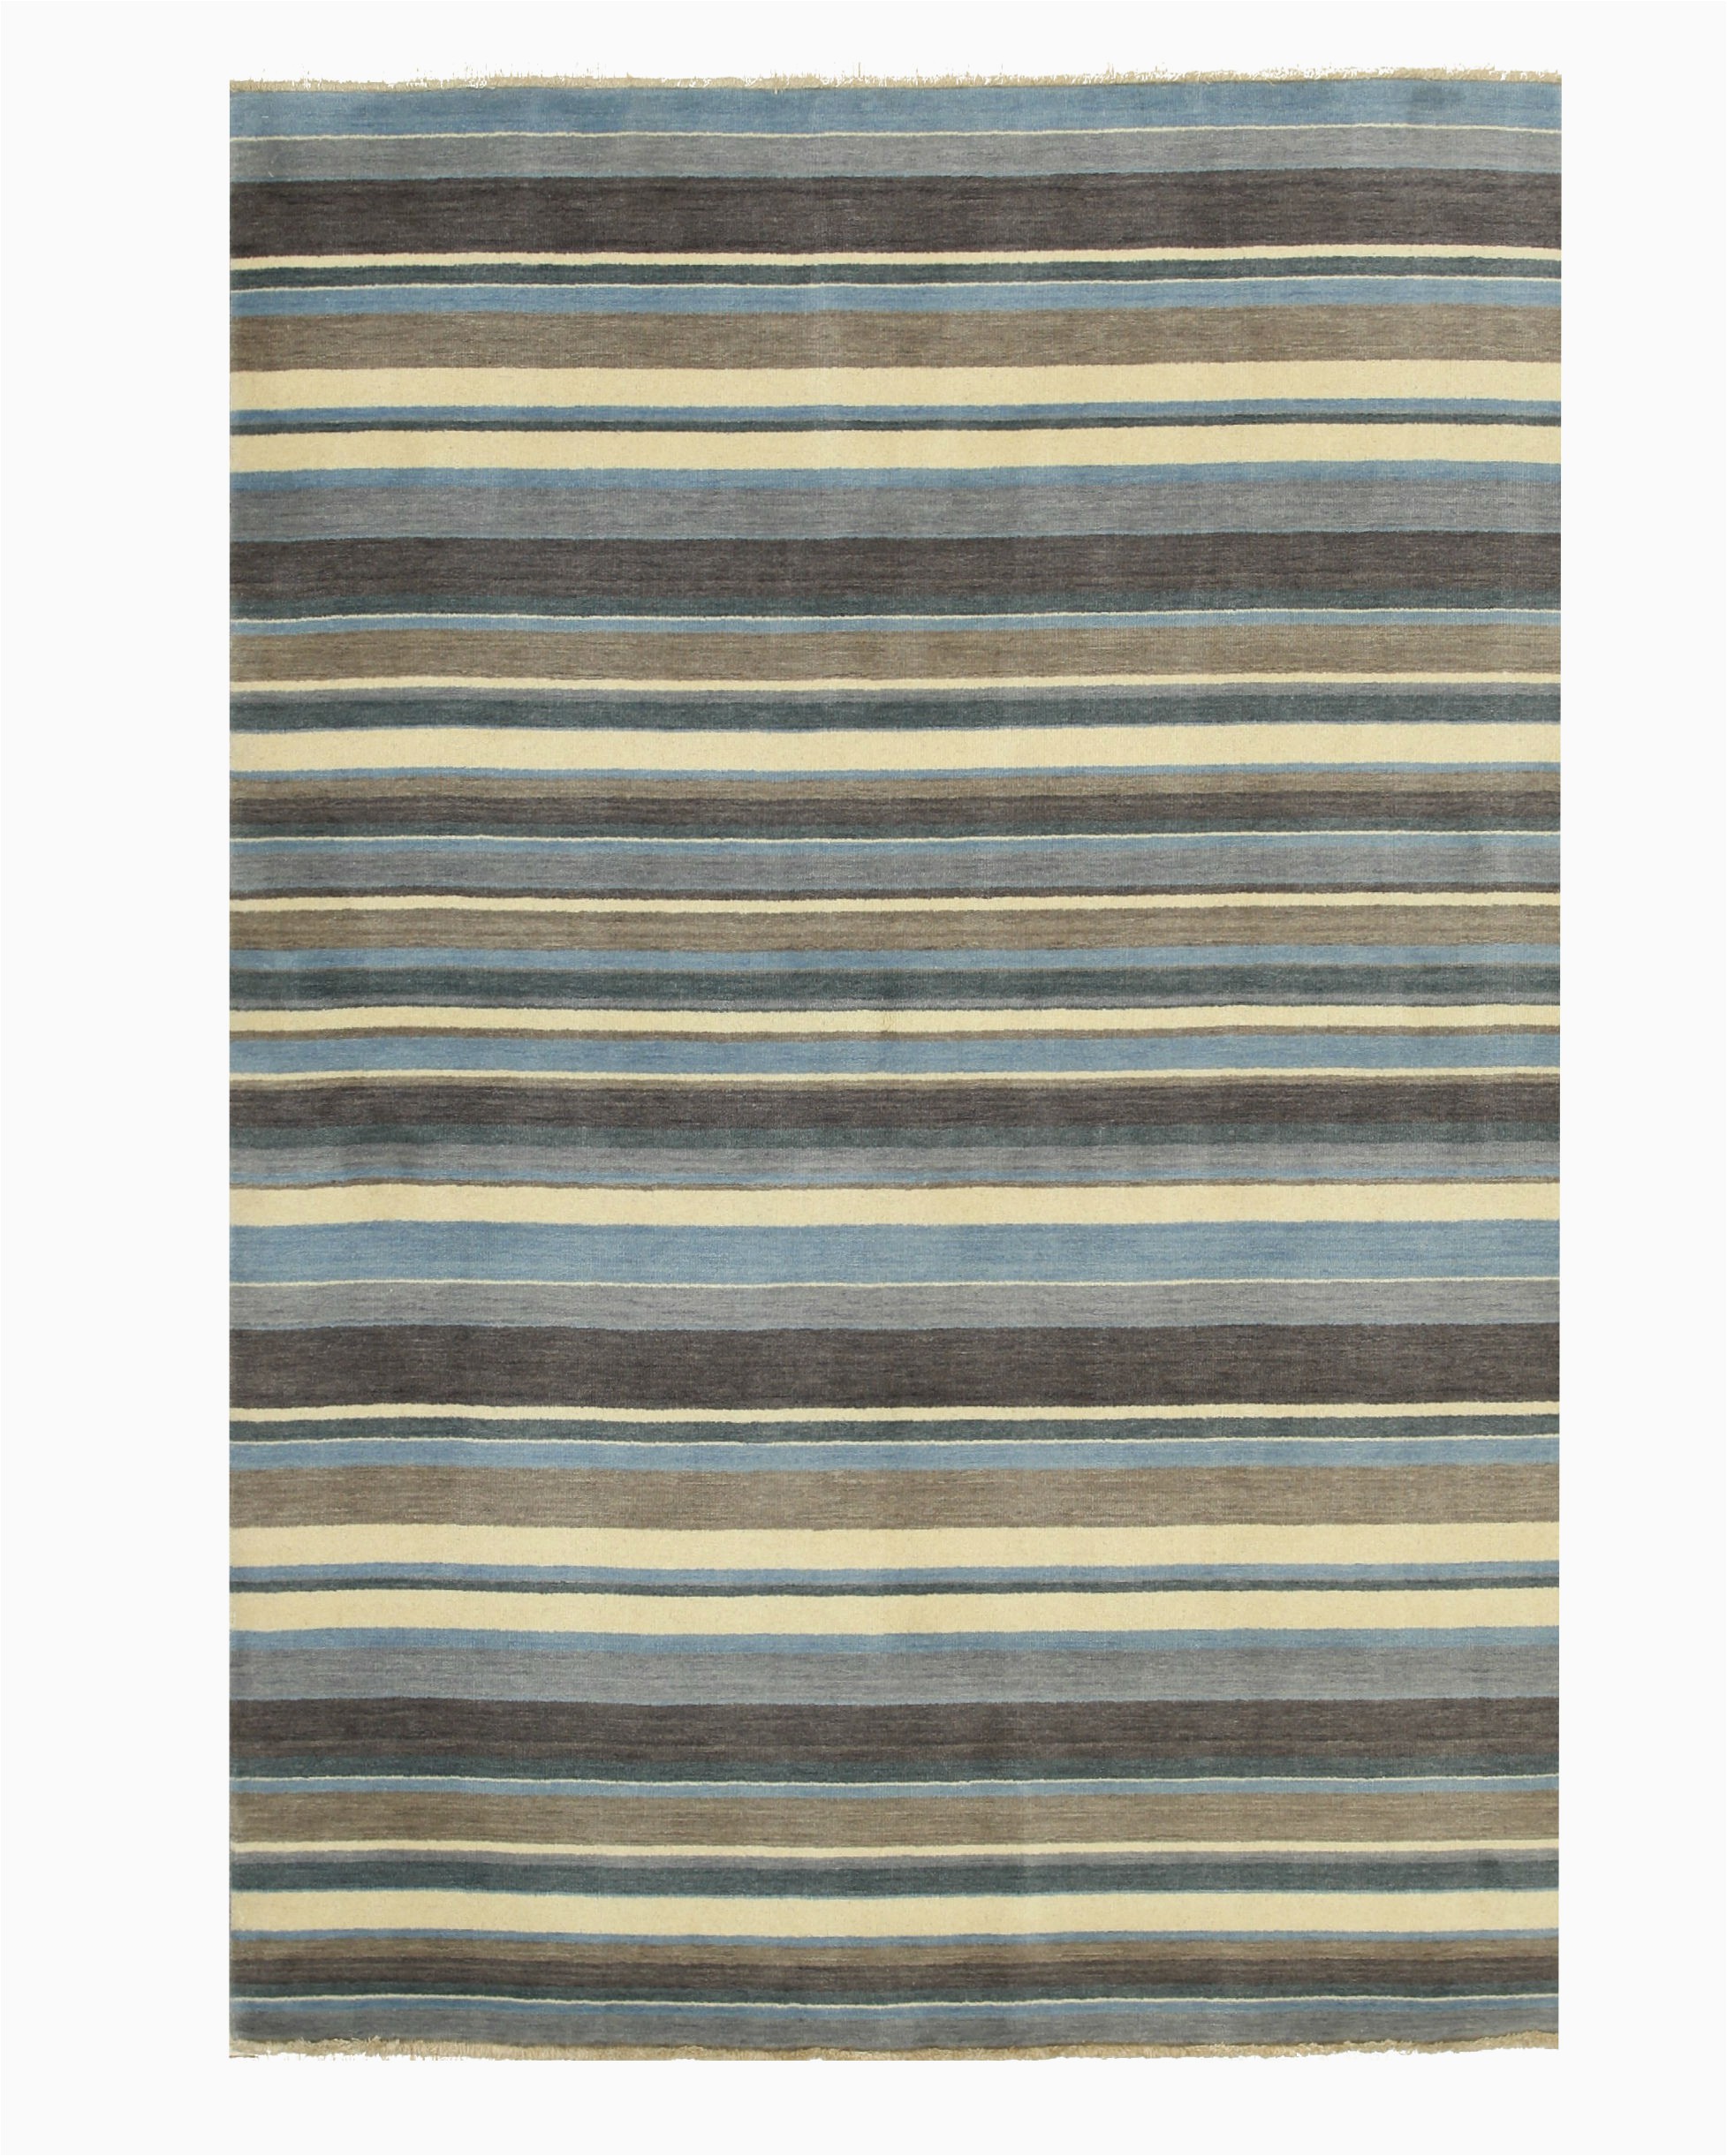 Blue Striped Wool Rug Blue Brown Striped Handmade Wool Rug